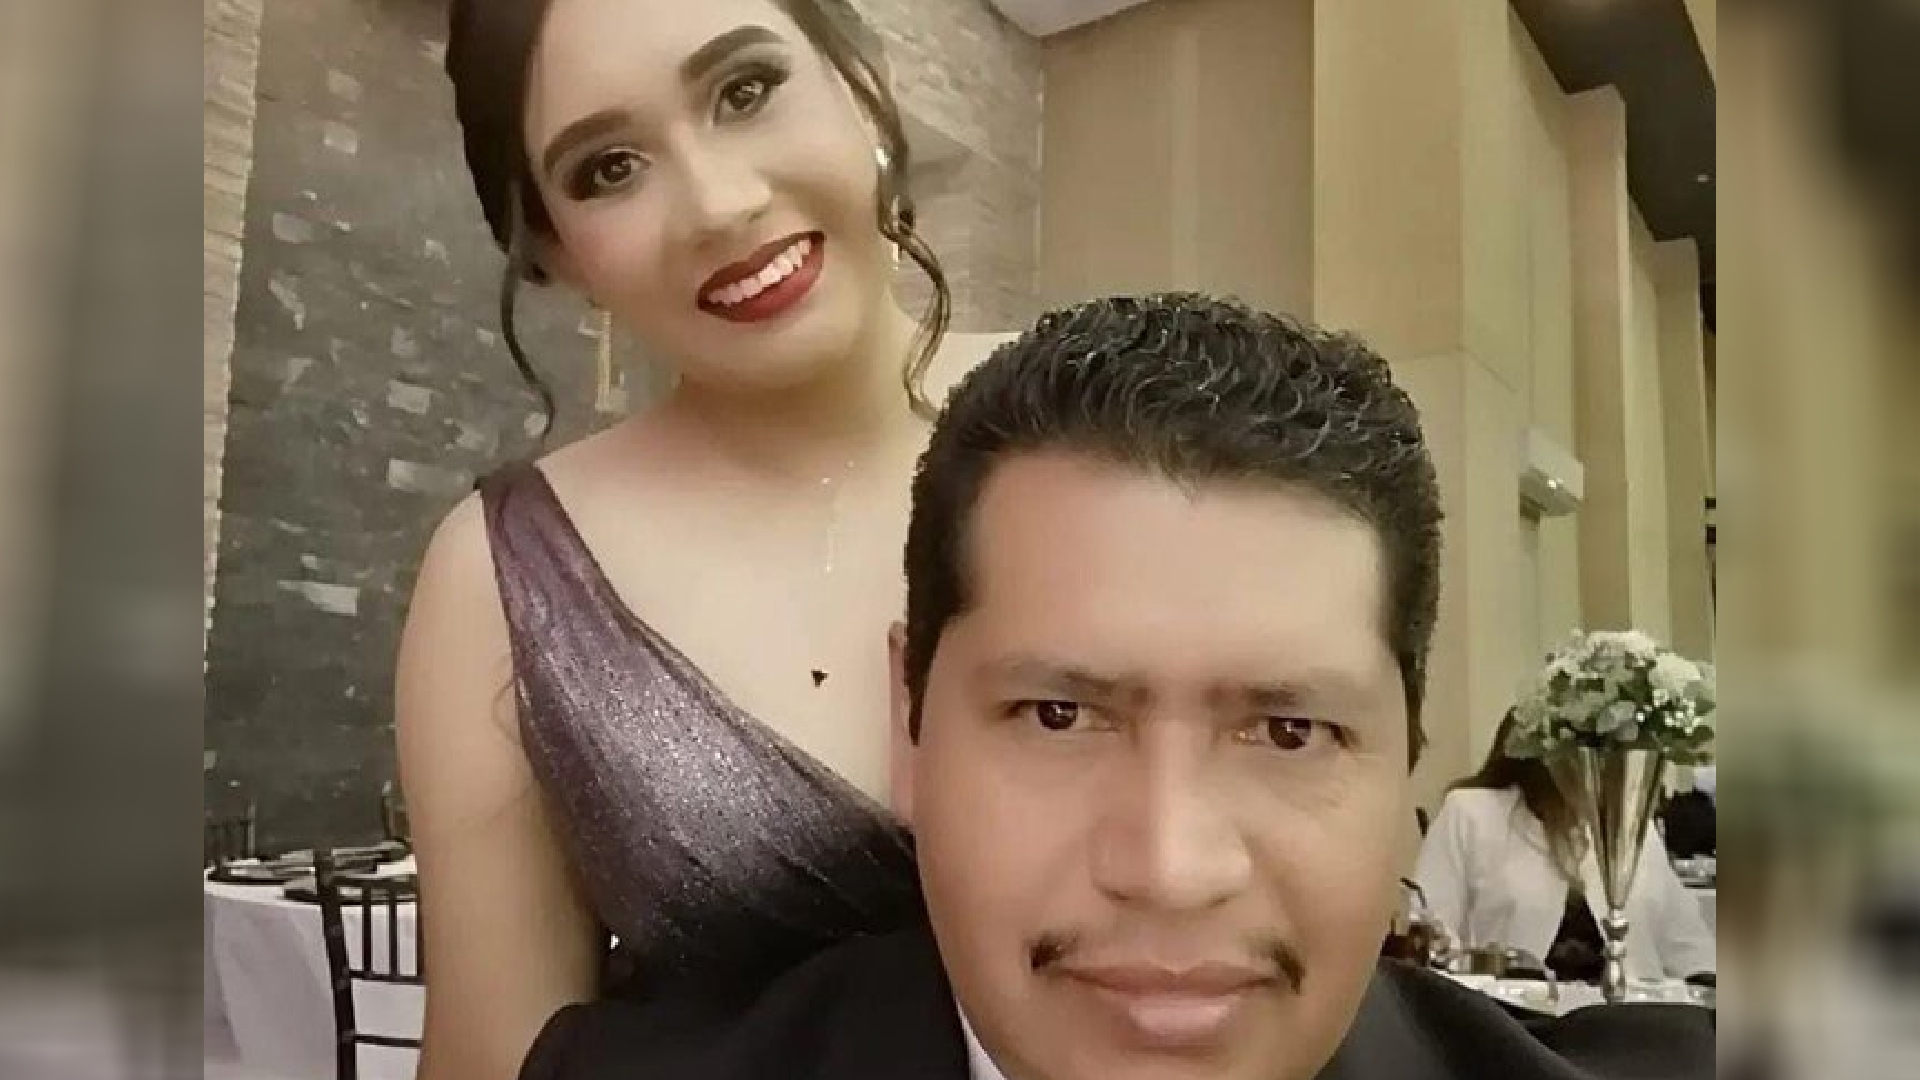 Antonio de la Cruz, Cynthia de la Cruz, Tamaulipas